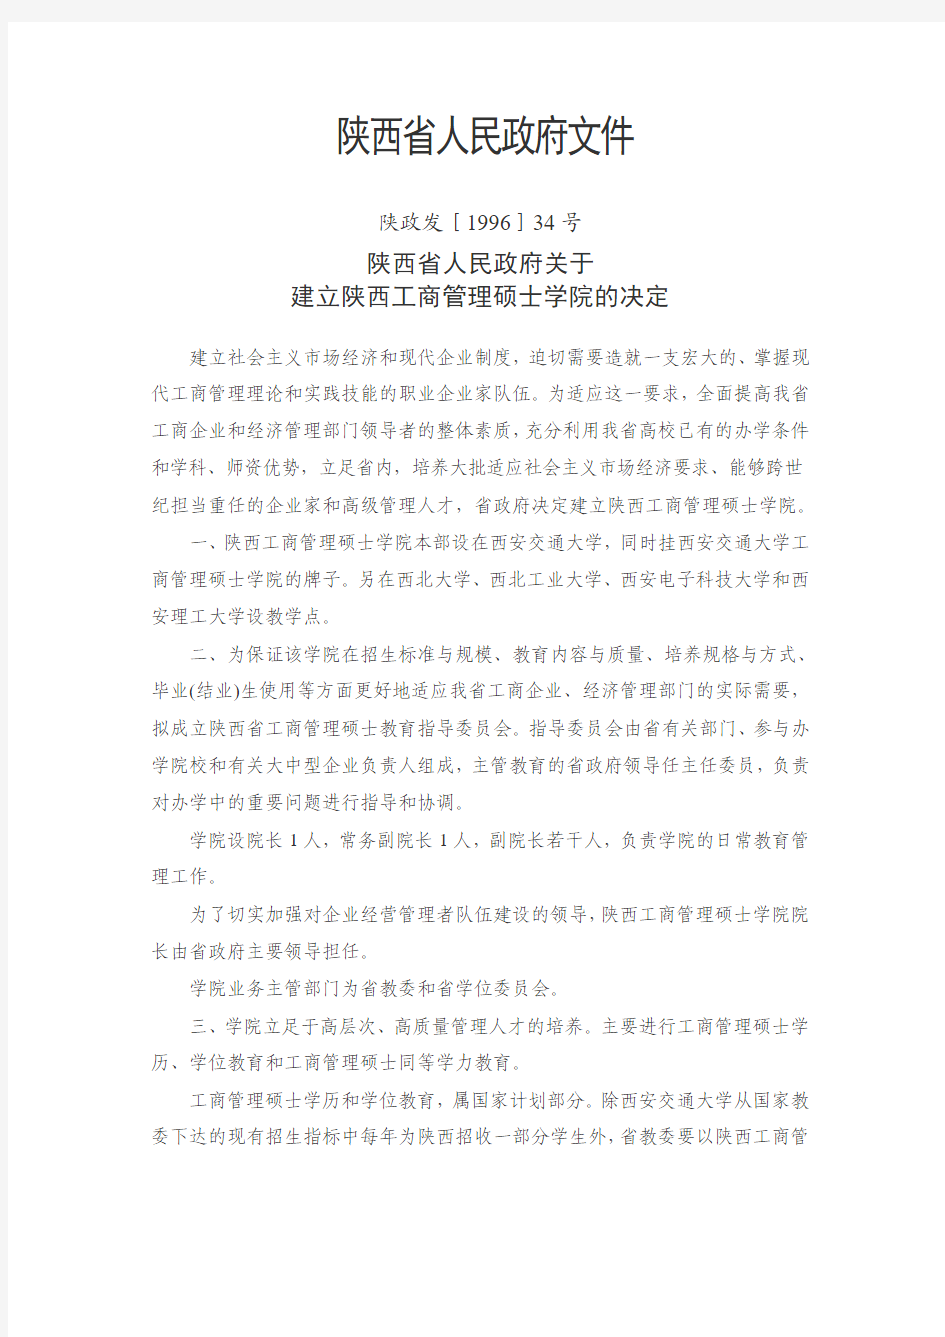 2、陕西省人民政府关于建立陕西工商管理硕士学院的决定pdf